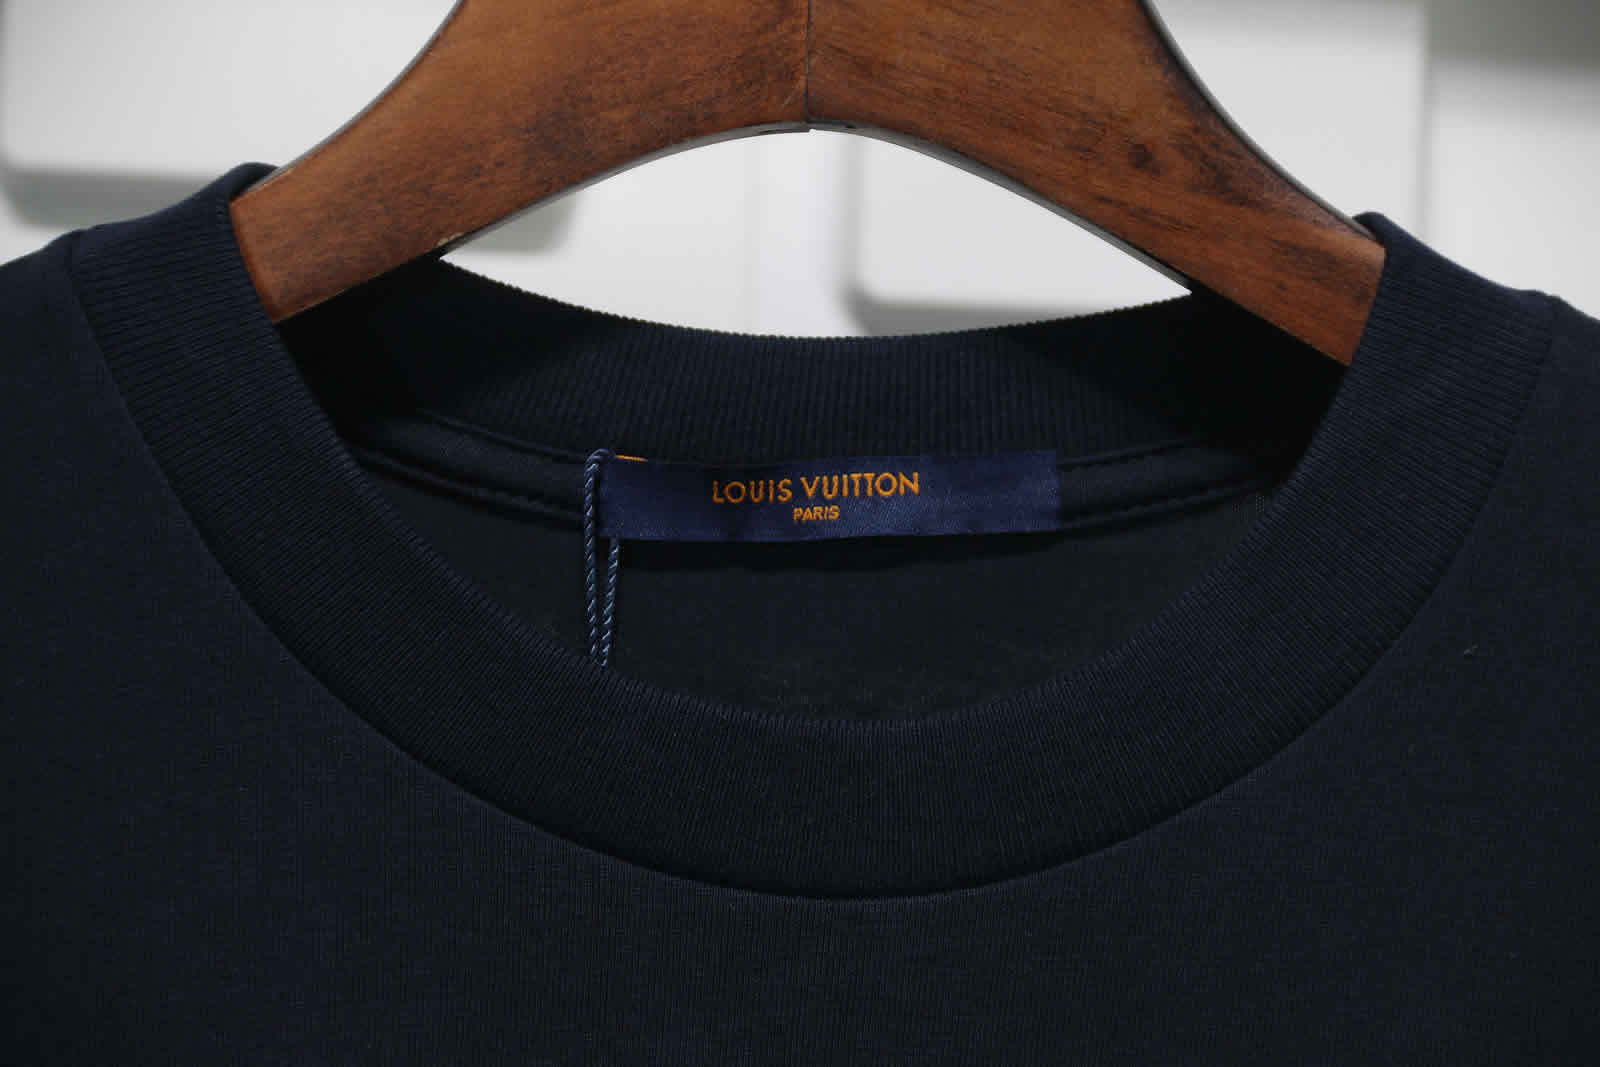 Louis Vuitton Catwalk T Shirt 2021 8 - www.kickbulk.org